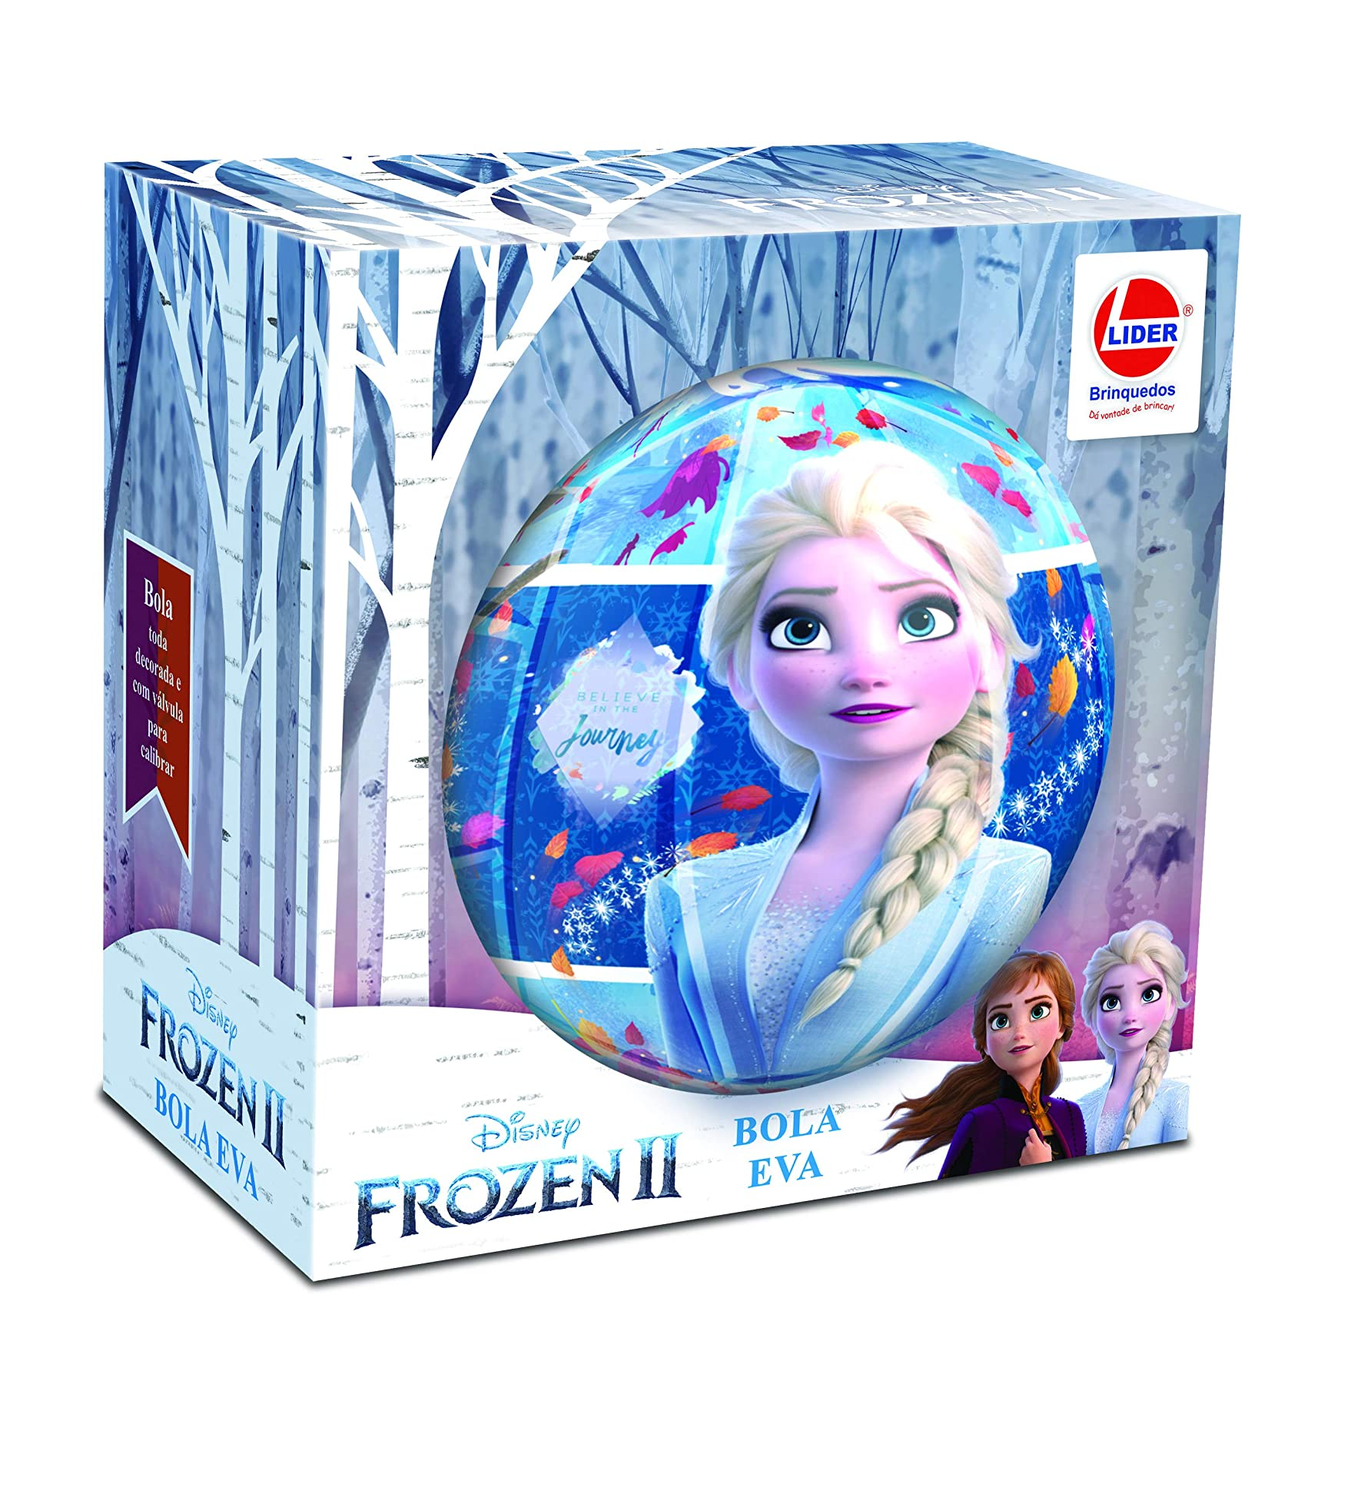 Bola de futebol MONDO Frozen 2 - Bolas - Compra na